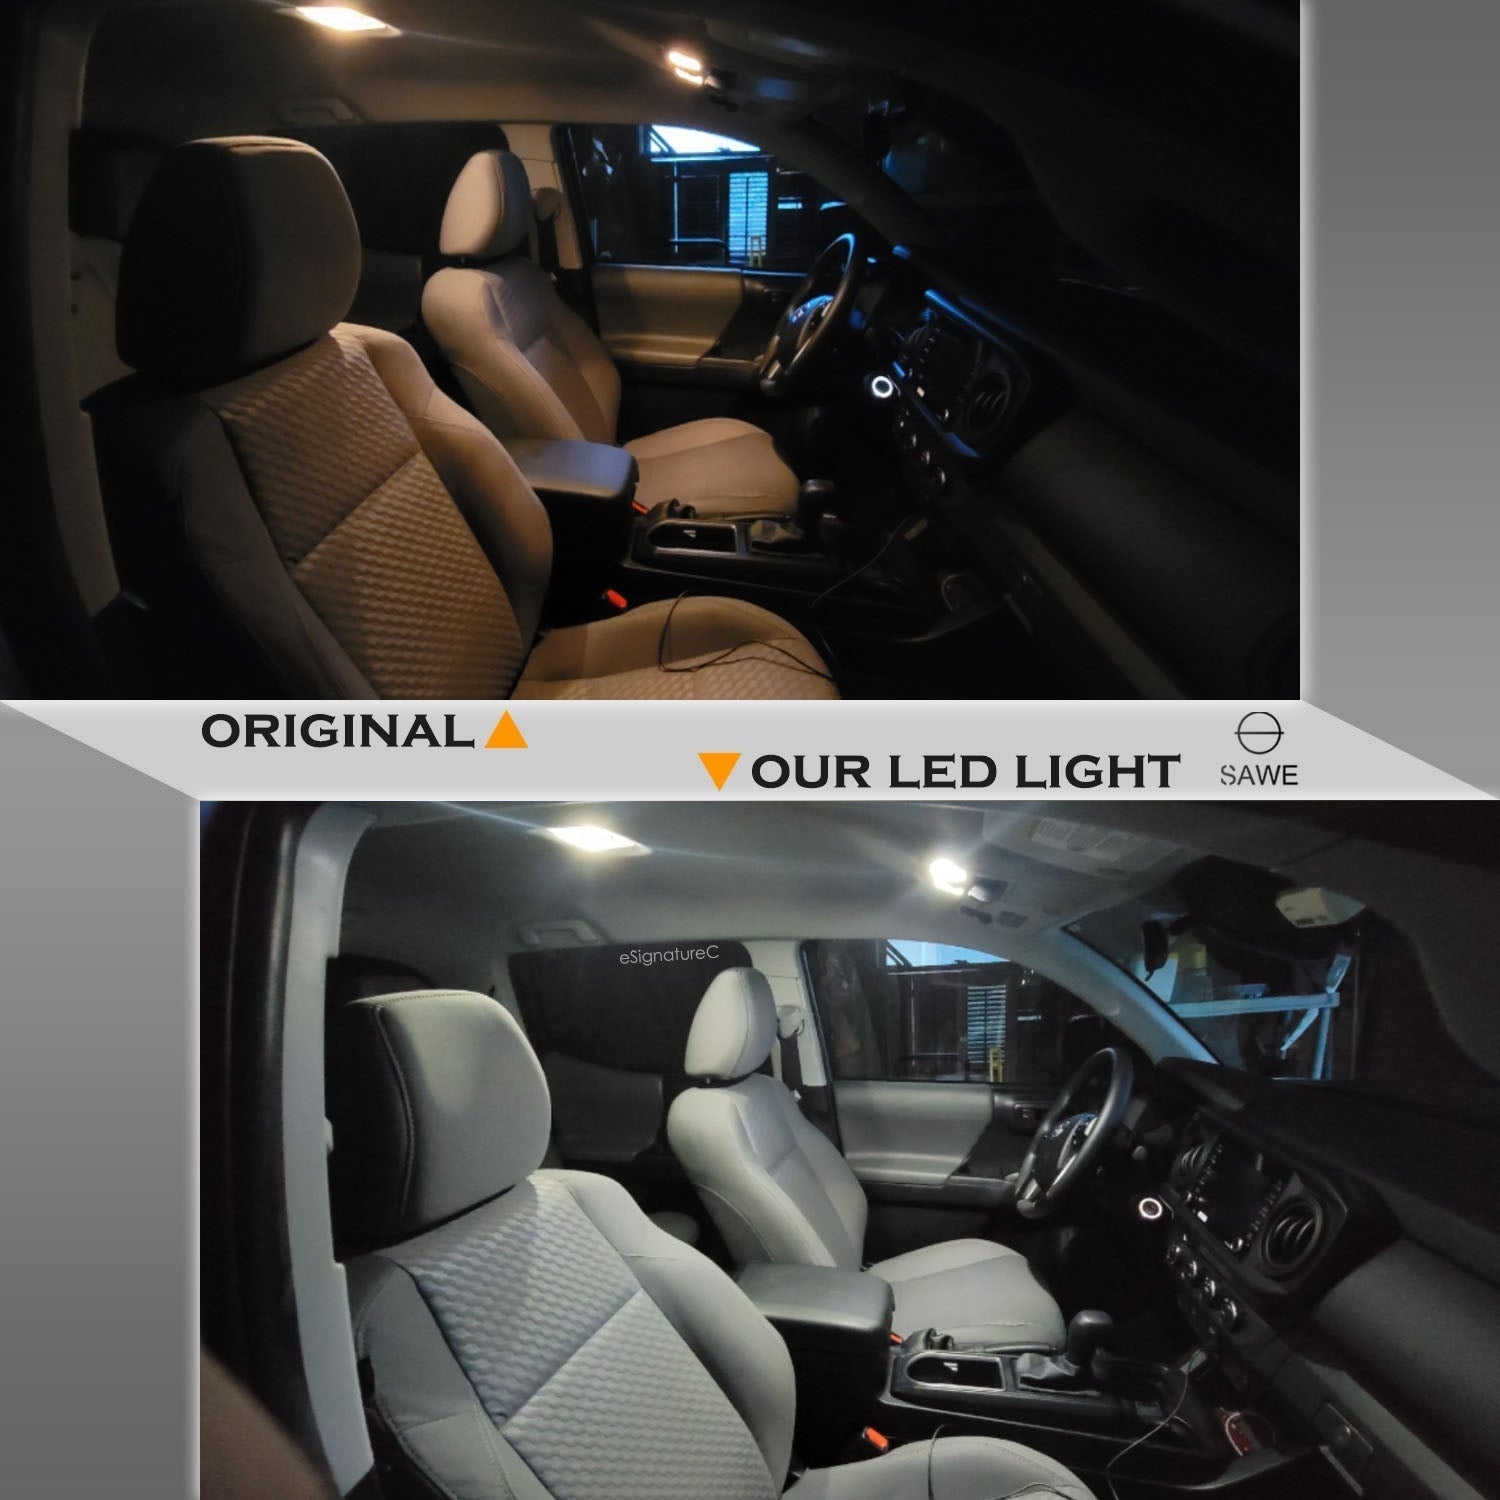 For Lexus SC300 SC400 Interior LED Lights - Dome & Map Light Bulbs Package Kit for 1992 - 2000 - White